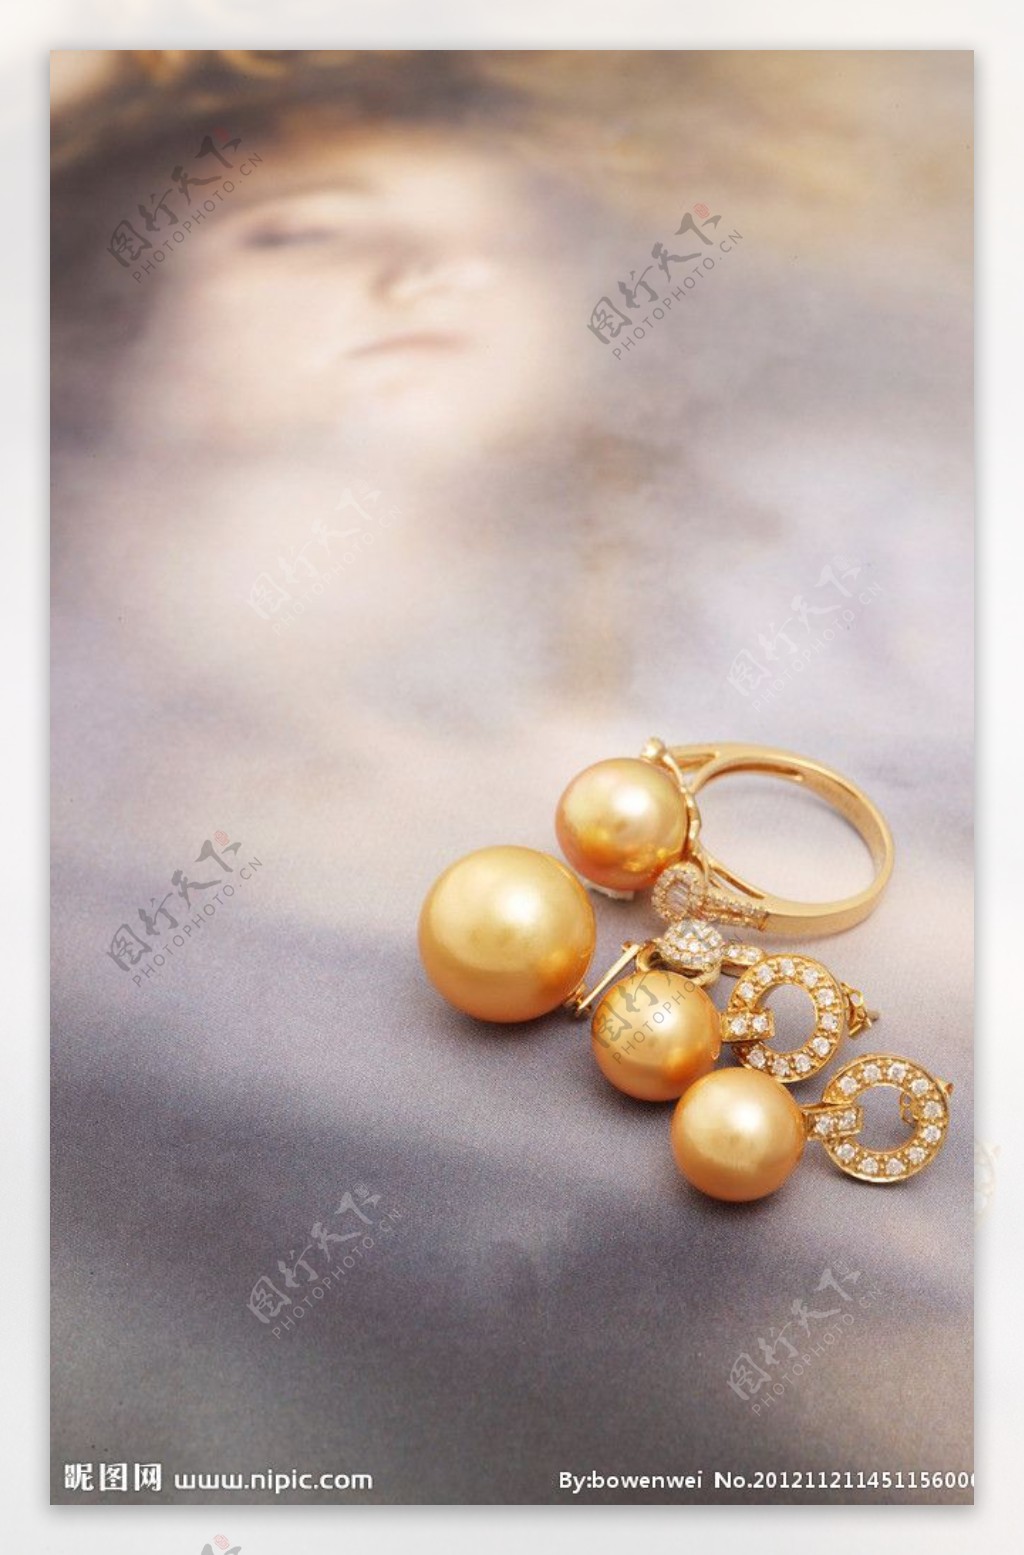 珍珠珠宝首饰玉器图片